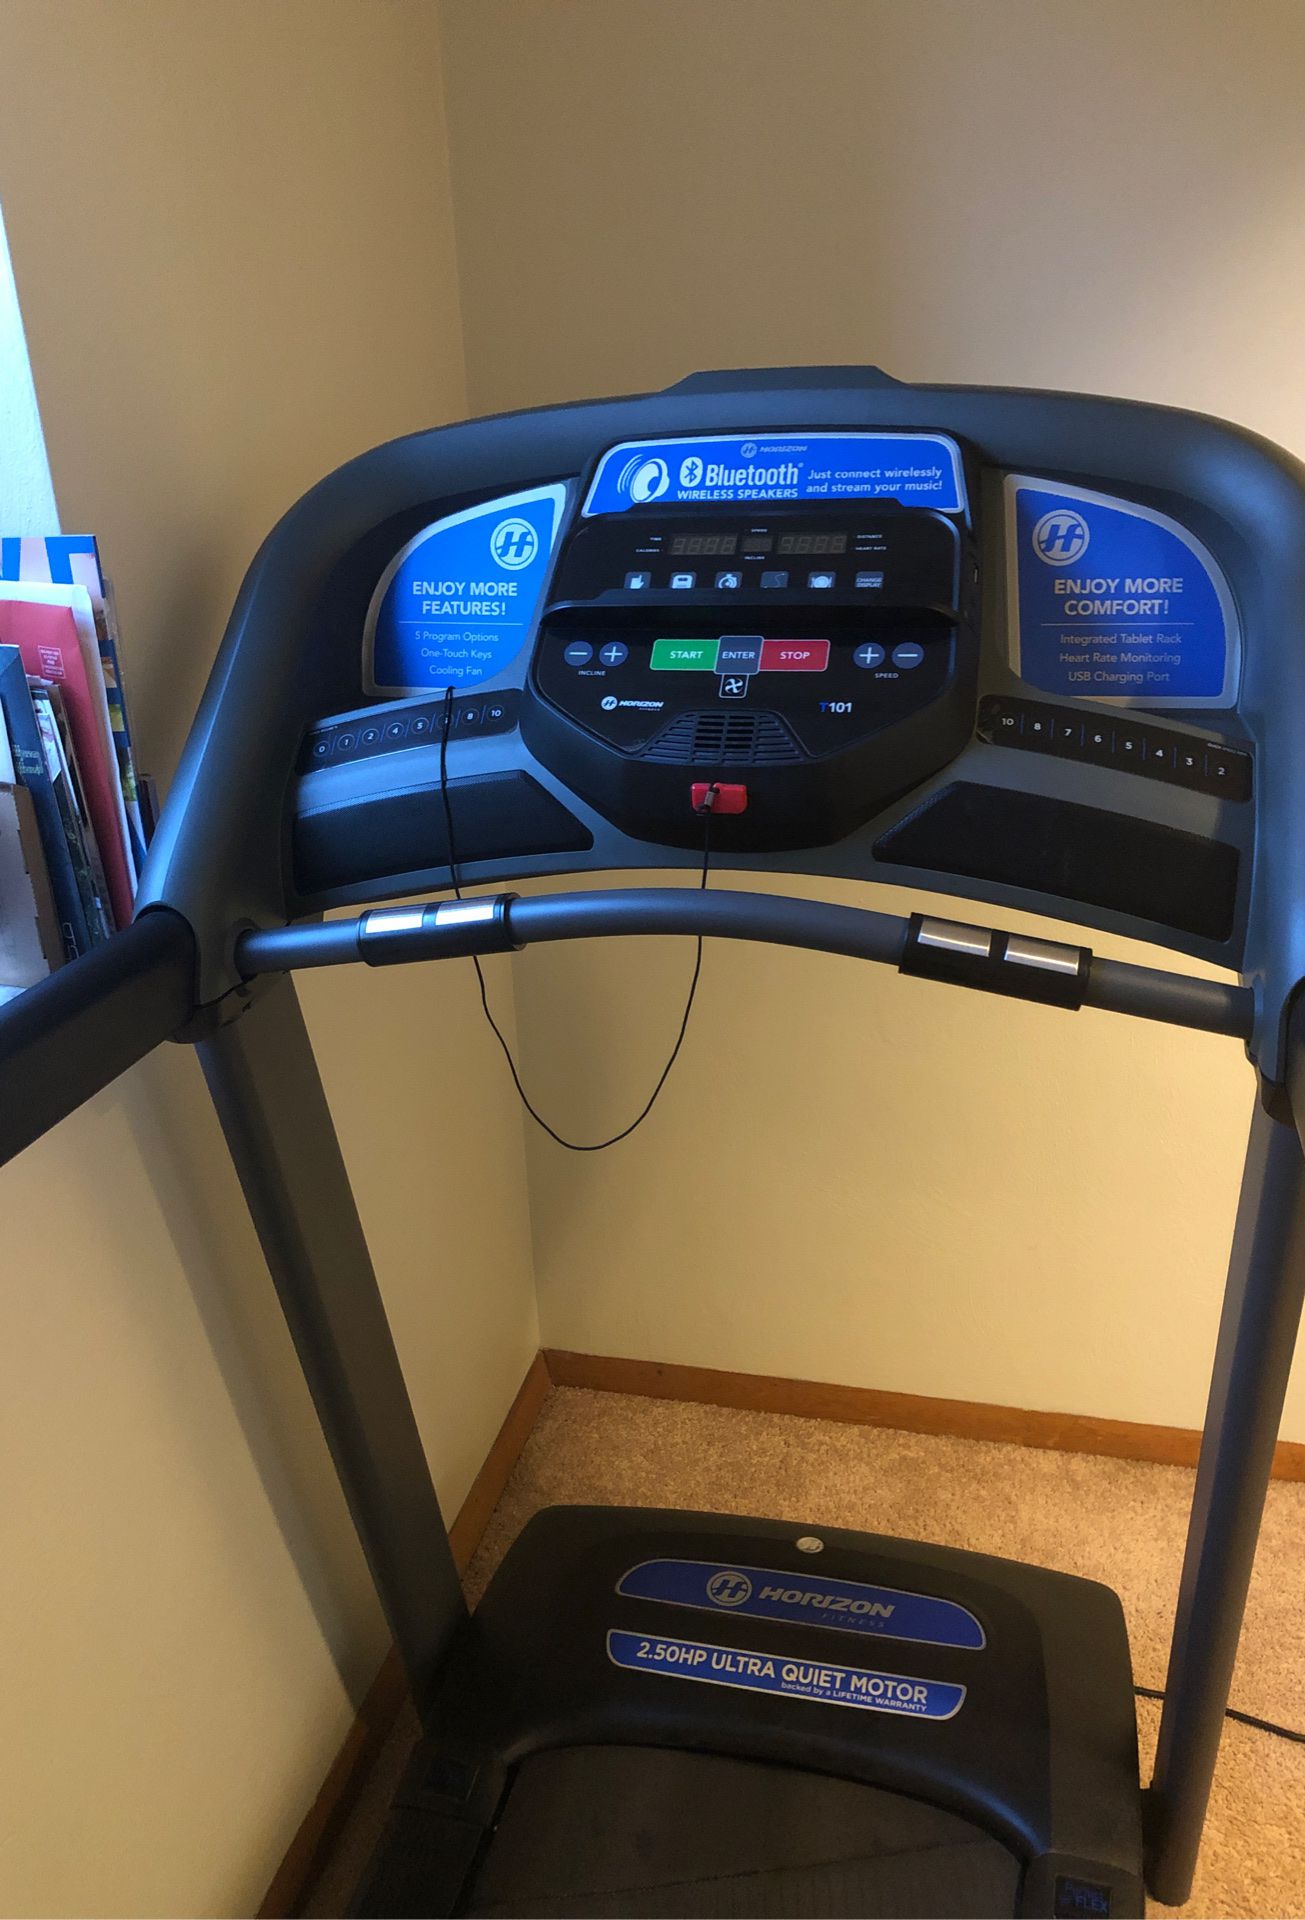 New Treadmill- Horizon T101